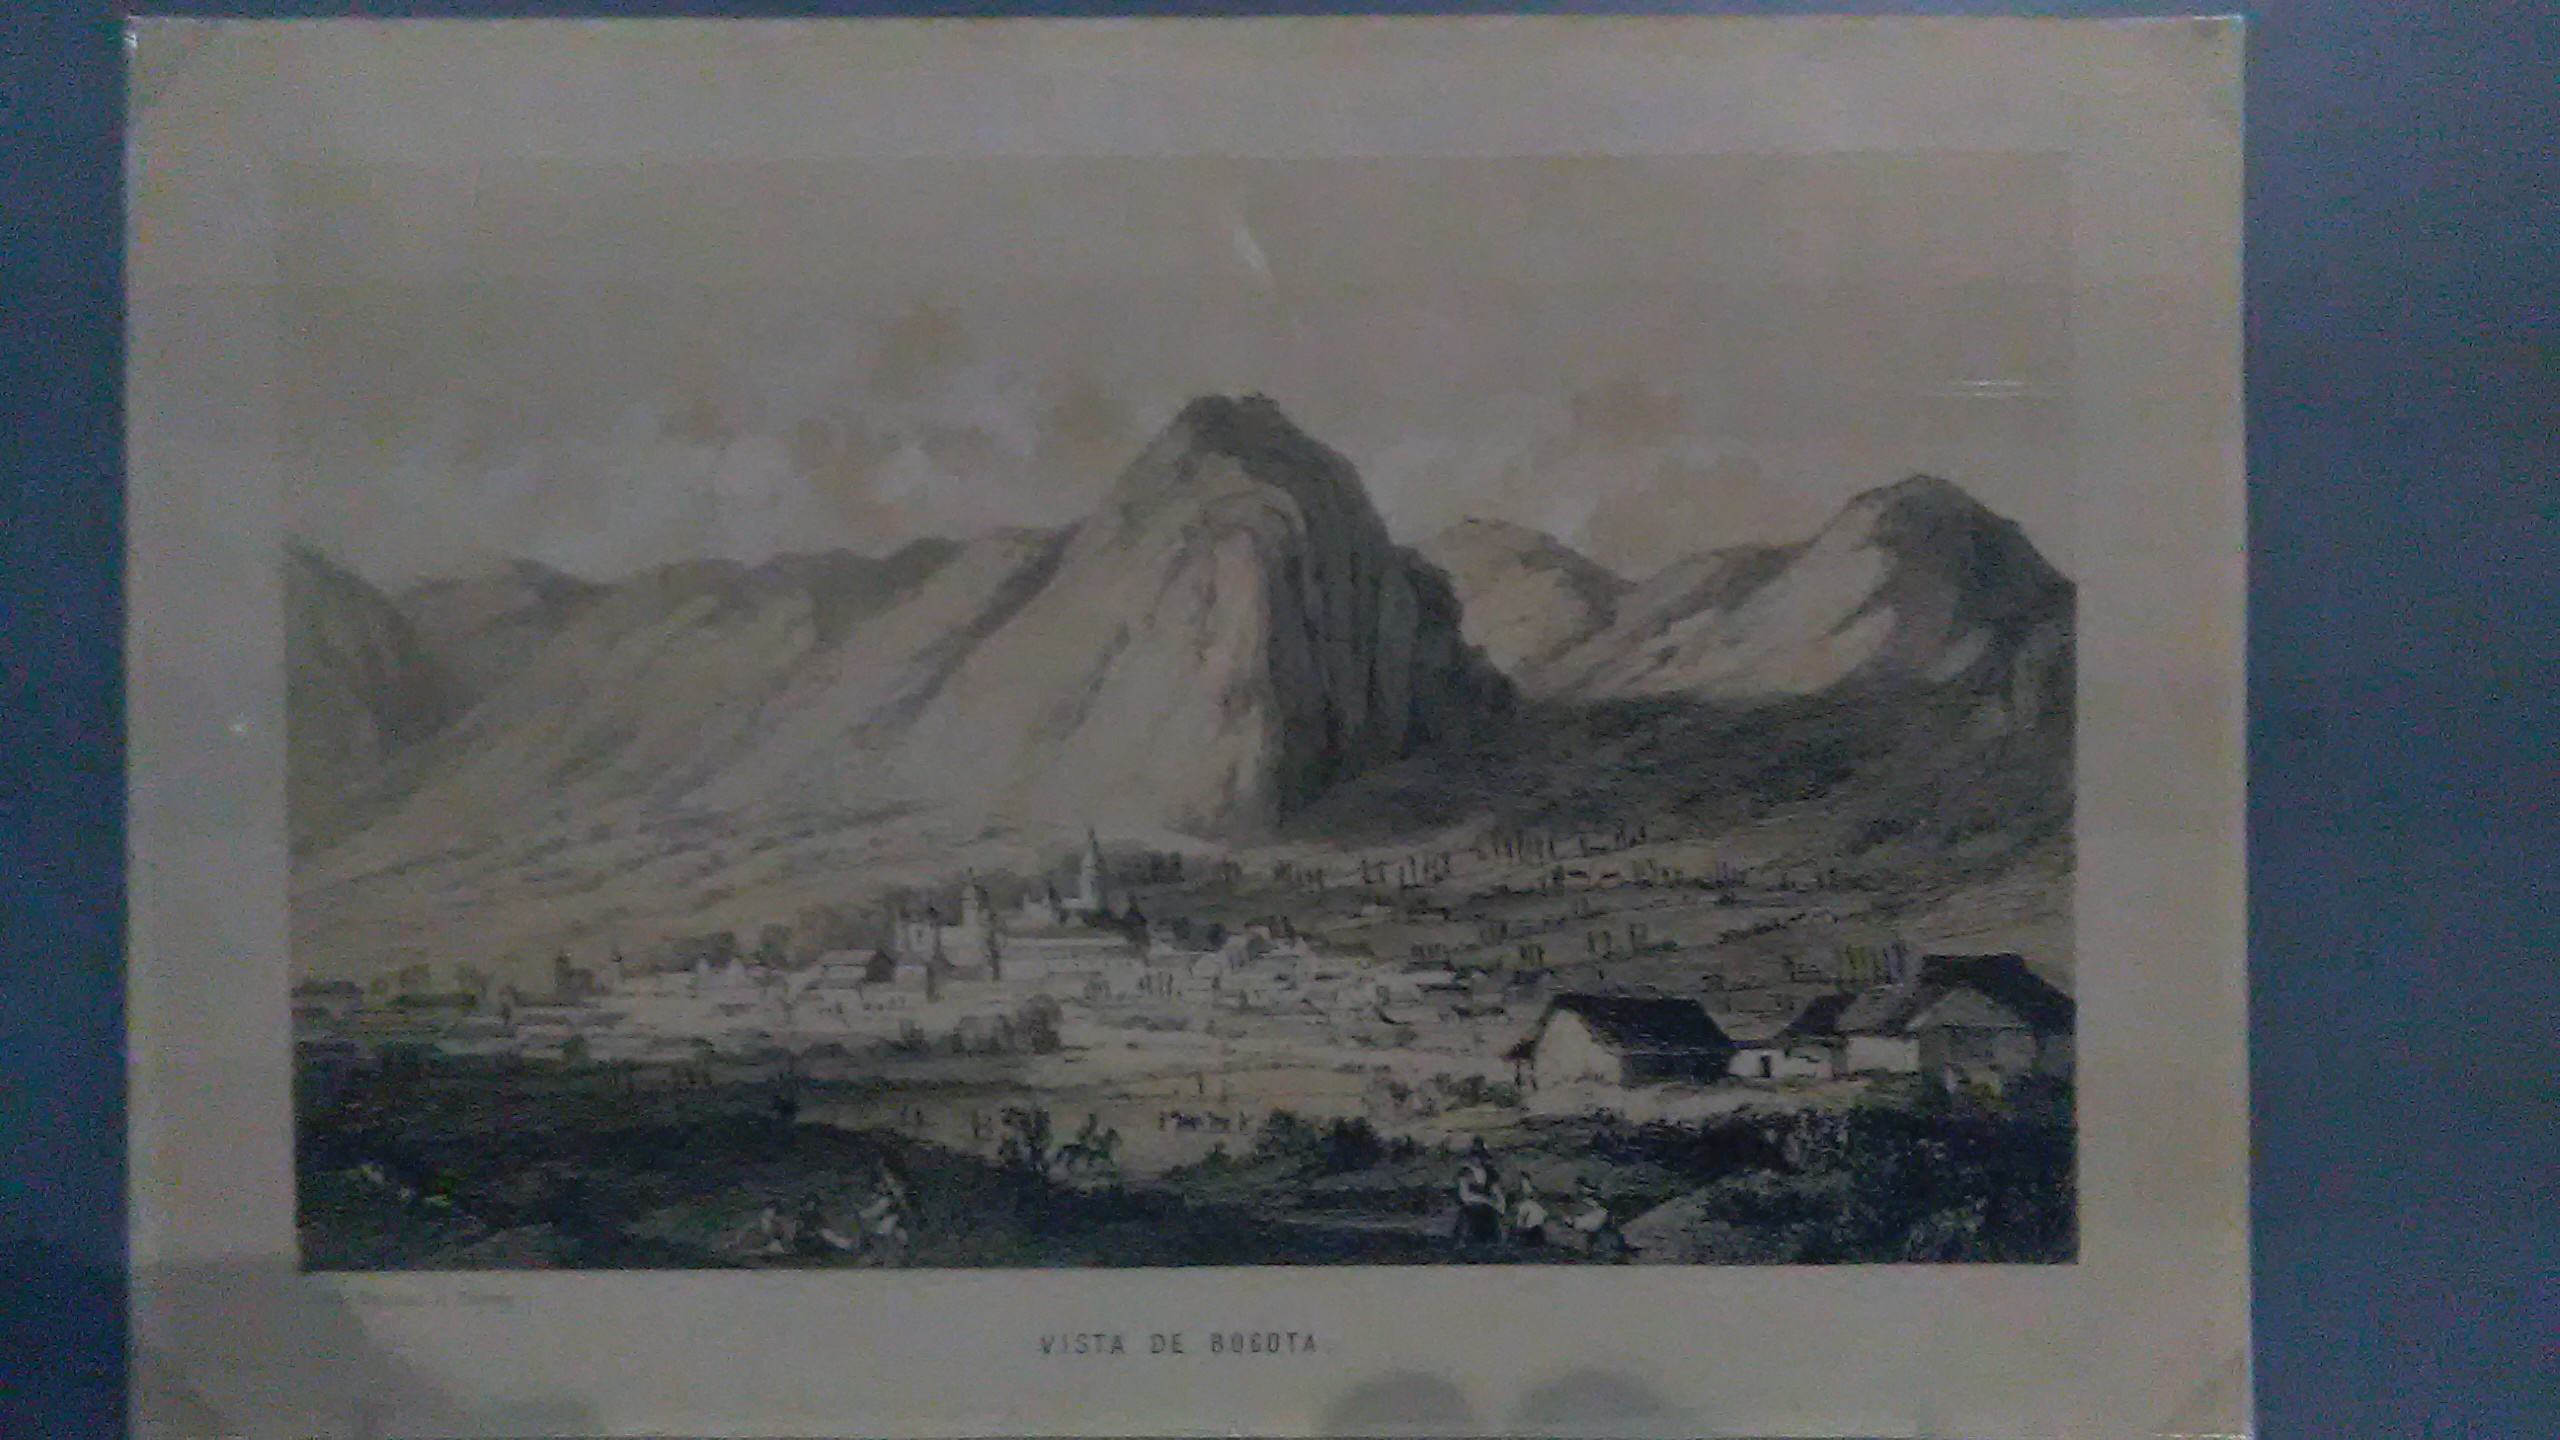 Bogotá in 1850